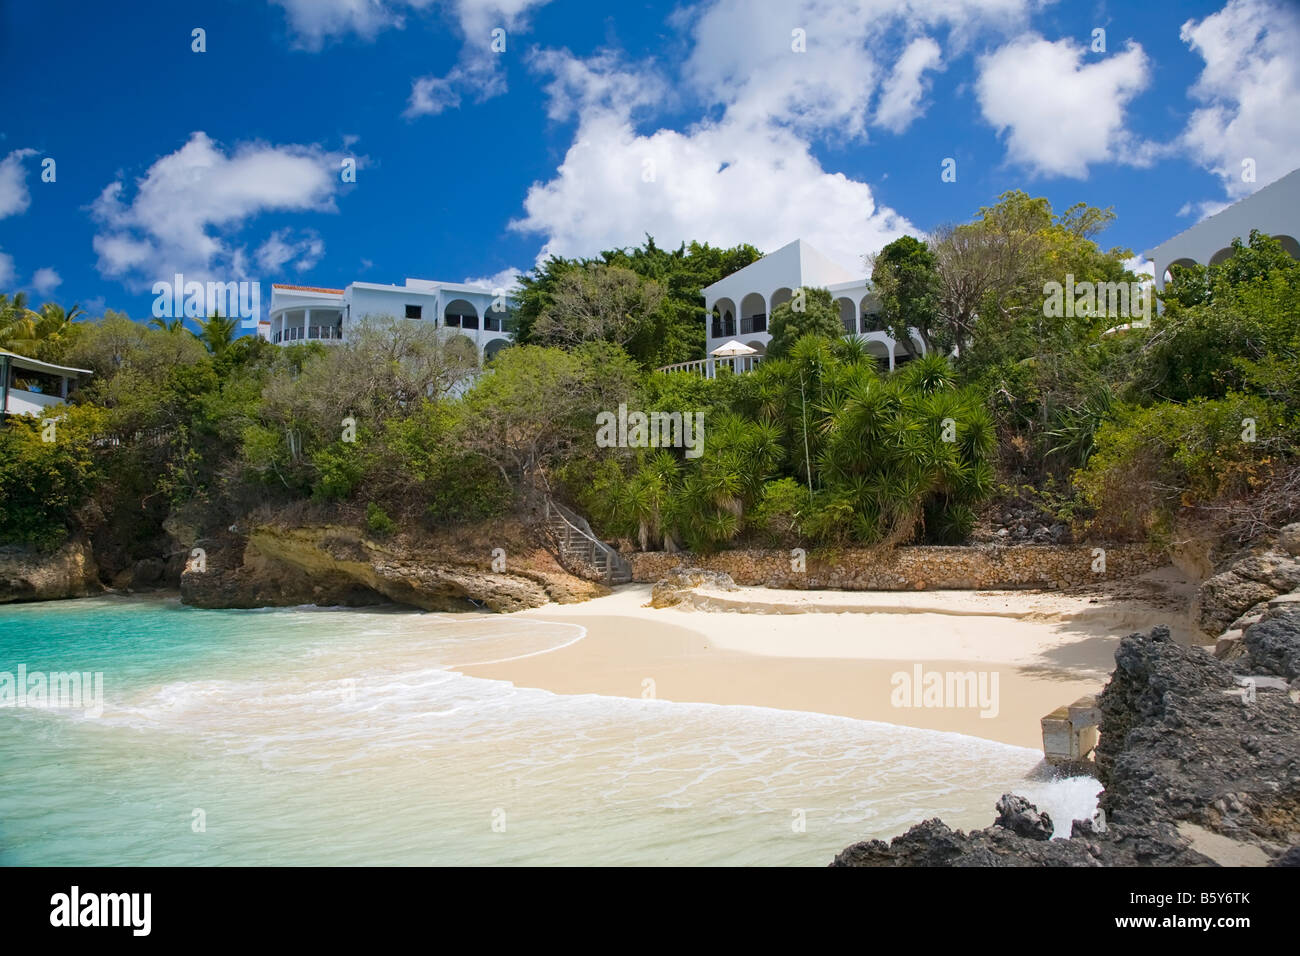 Petite crique et plage sur l'île d'anguilla dans les Antilles Britanniques Banque D'Images